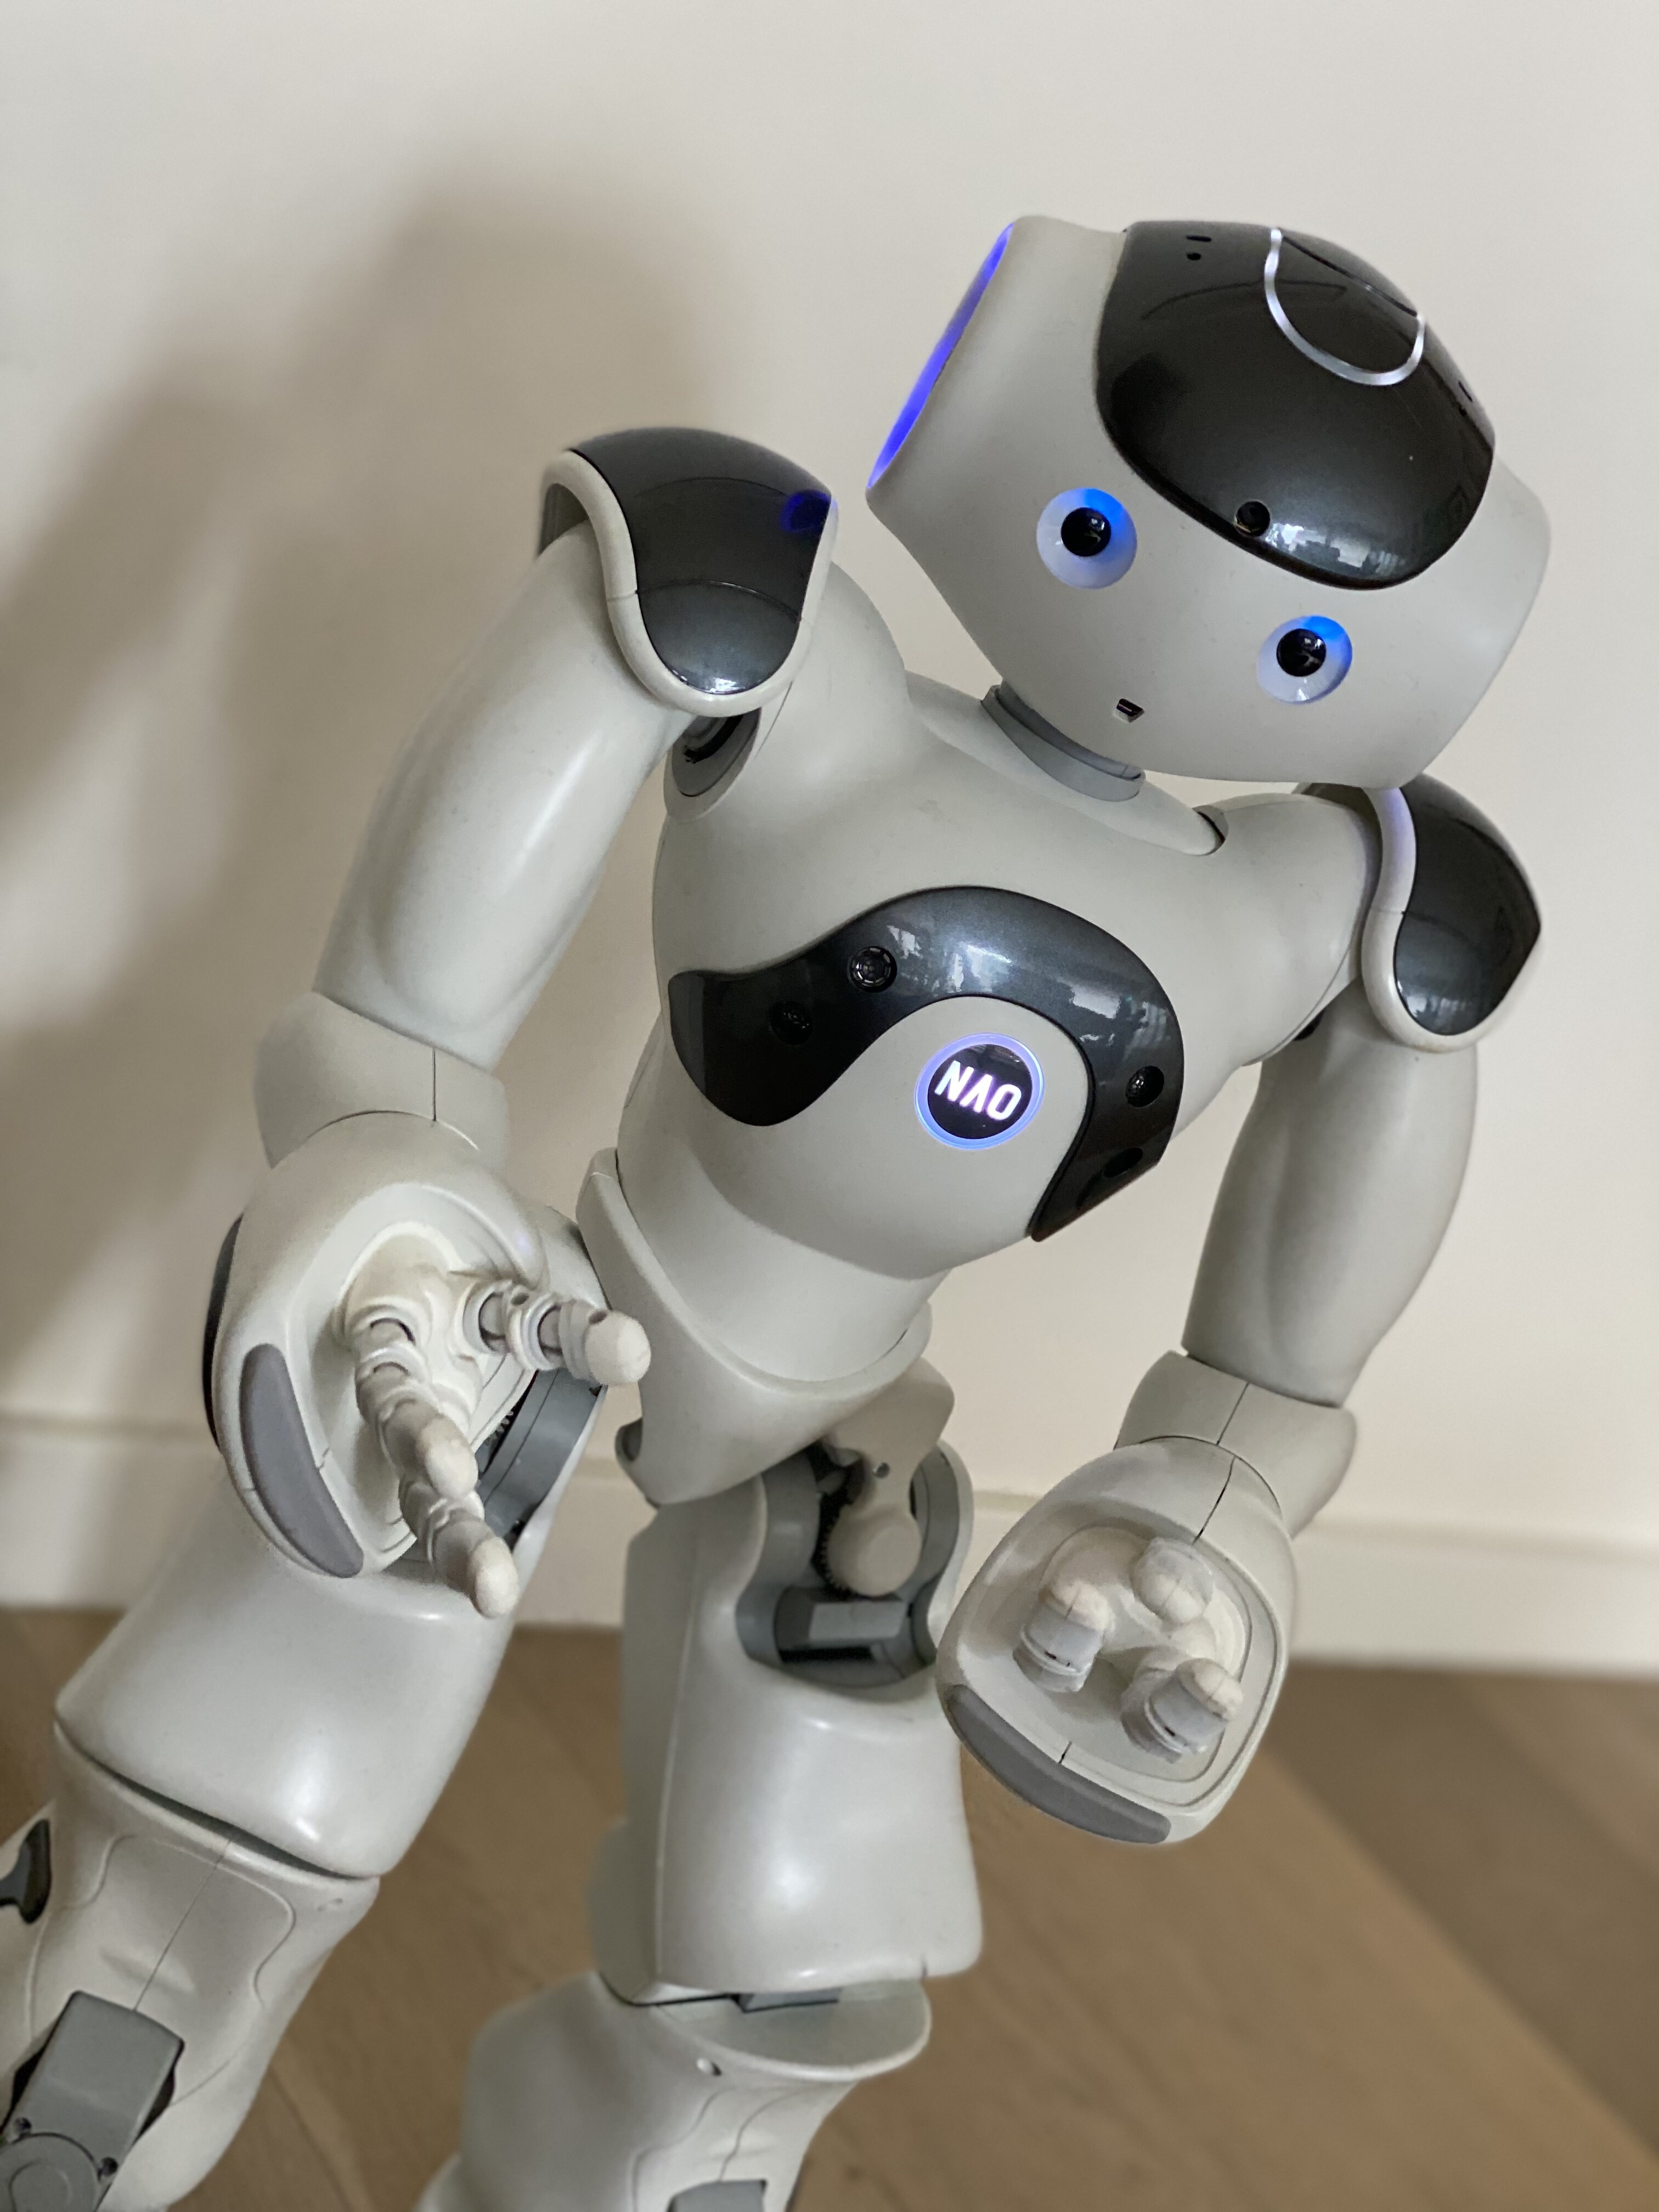 Formen Ejendommelige ingen Nao V6 robot for sale (Belgium) - Marketplace - RobotShop Community